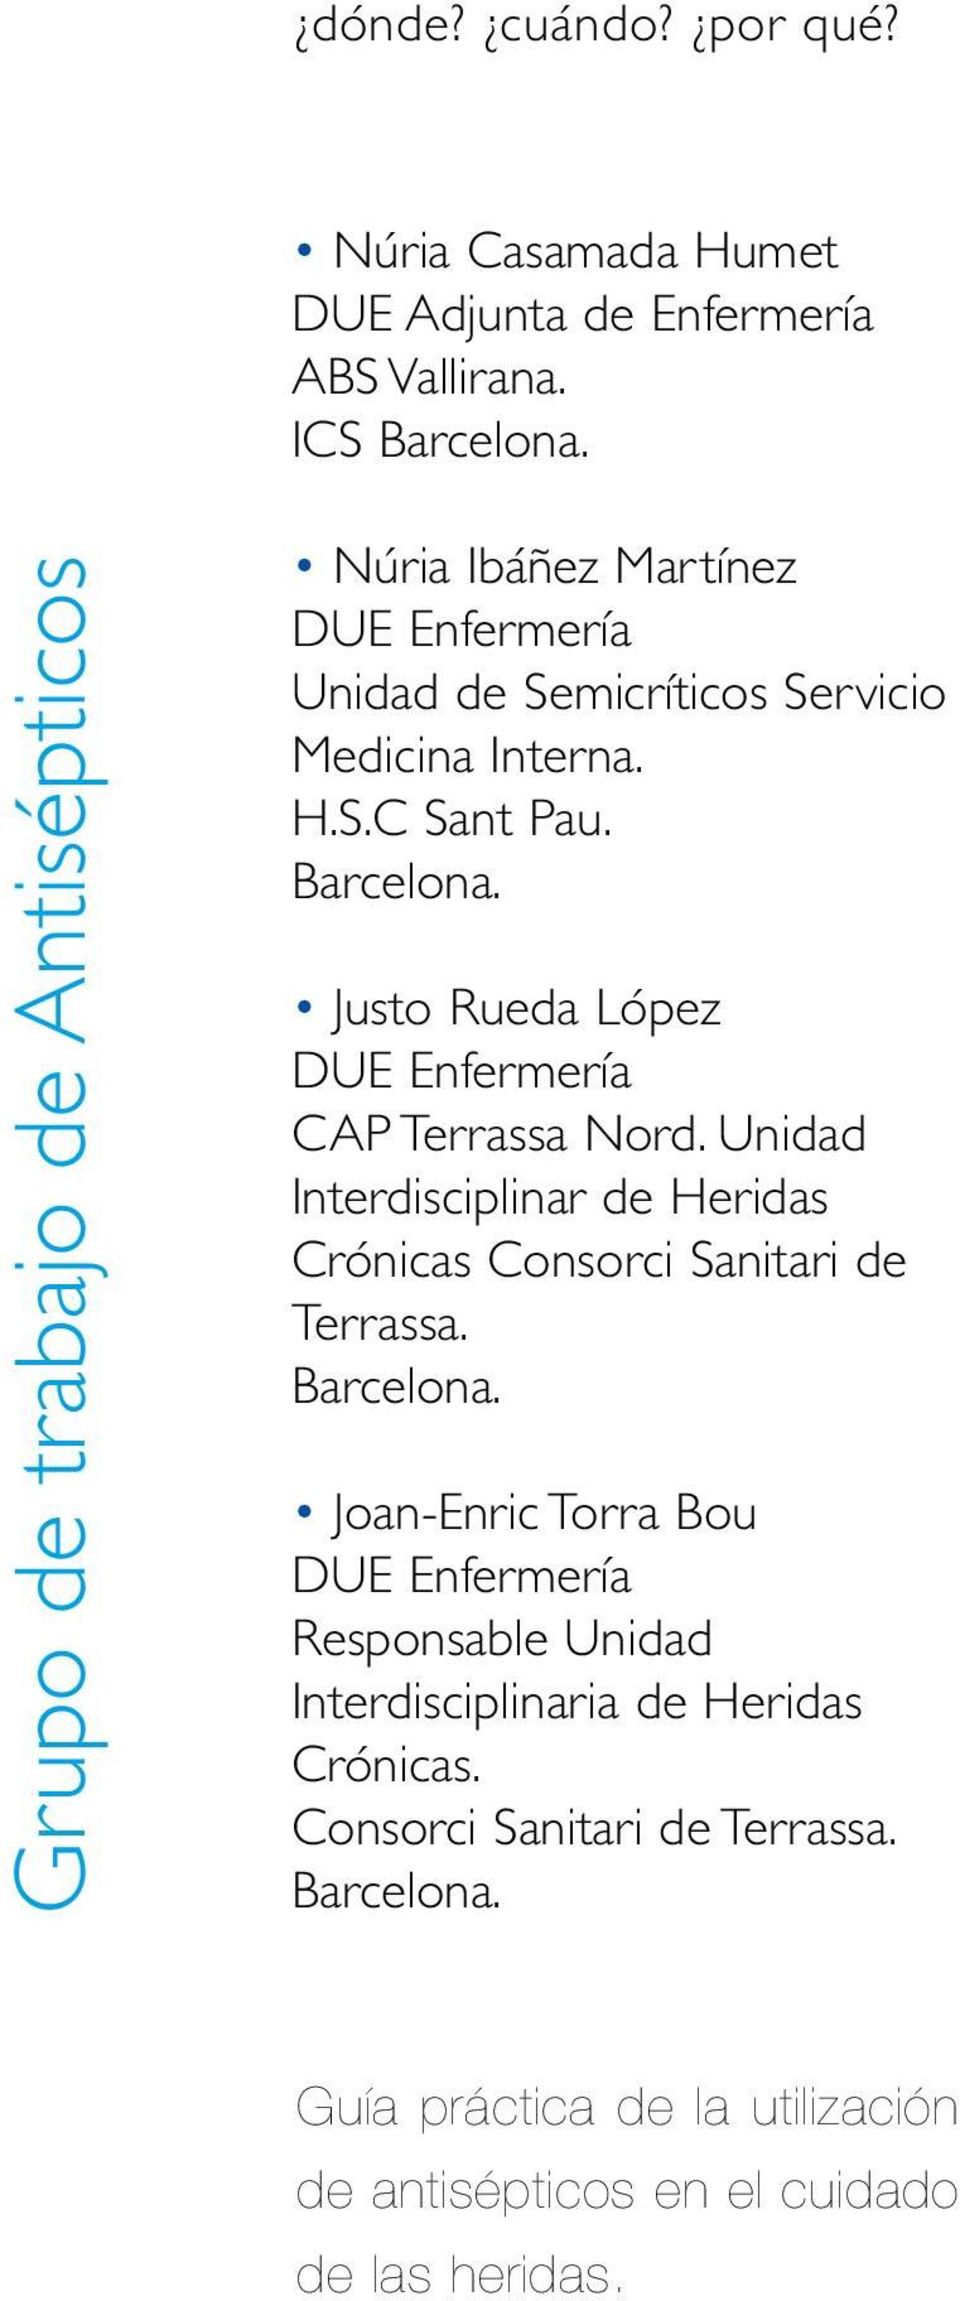 Justo Rueda López DUE Enfermería CAP Terrassa Nord. Unidad Interdisciplinar de Heridas Crónicas Consorci Sanitari de Terrassa. Barcelona.